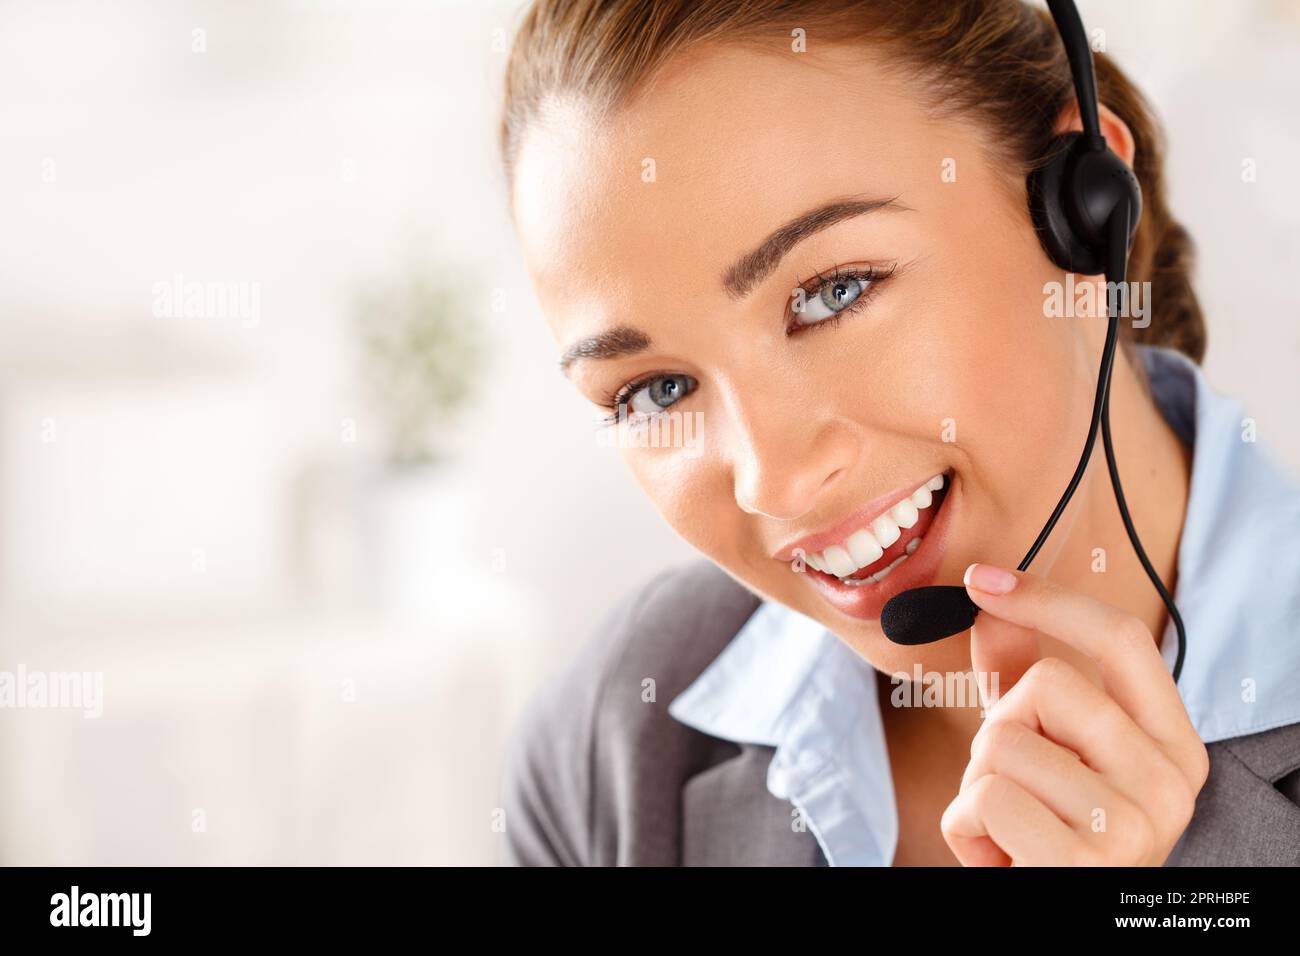 Frau, Callcenter und kontaktieren Sie uns Mitarbeiter im Kundenservice, Support-Mitarbeiter und Kommunikationsbüro. Lächelndes Porträt eines zufriedenen Empfangsmitarbeiters, Telemarketing-Beraters für den Vertrieb und crm-Beraters Stockfoto